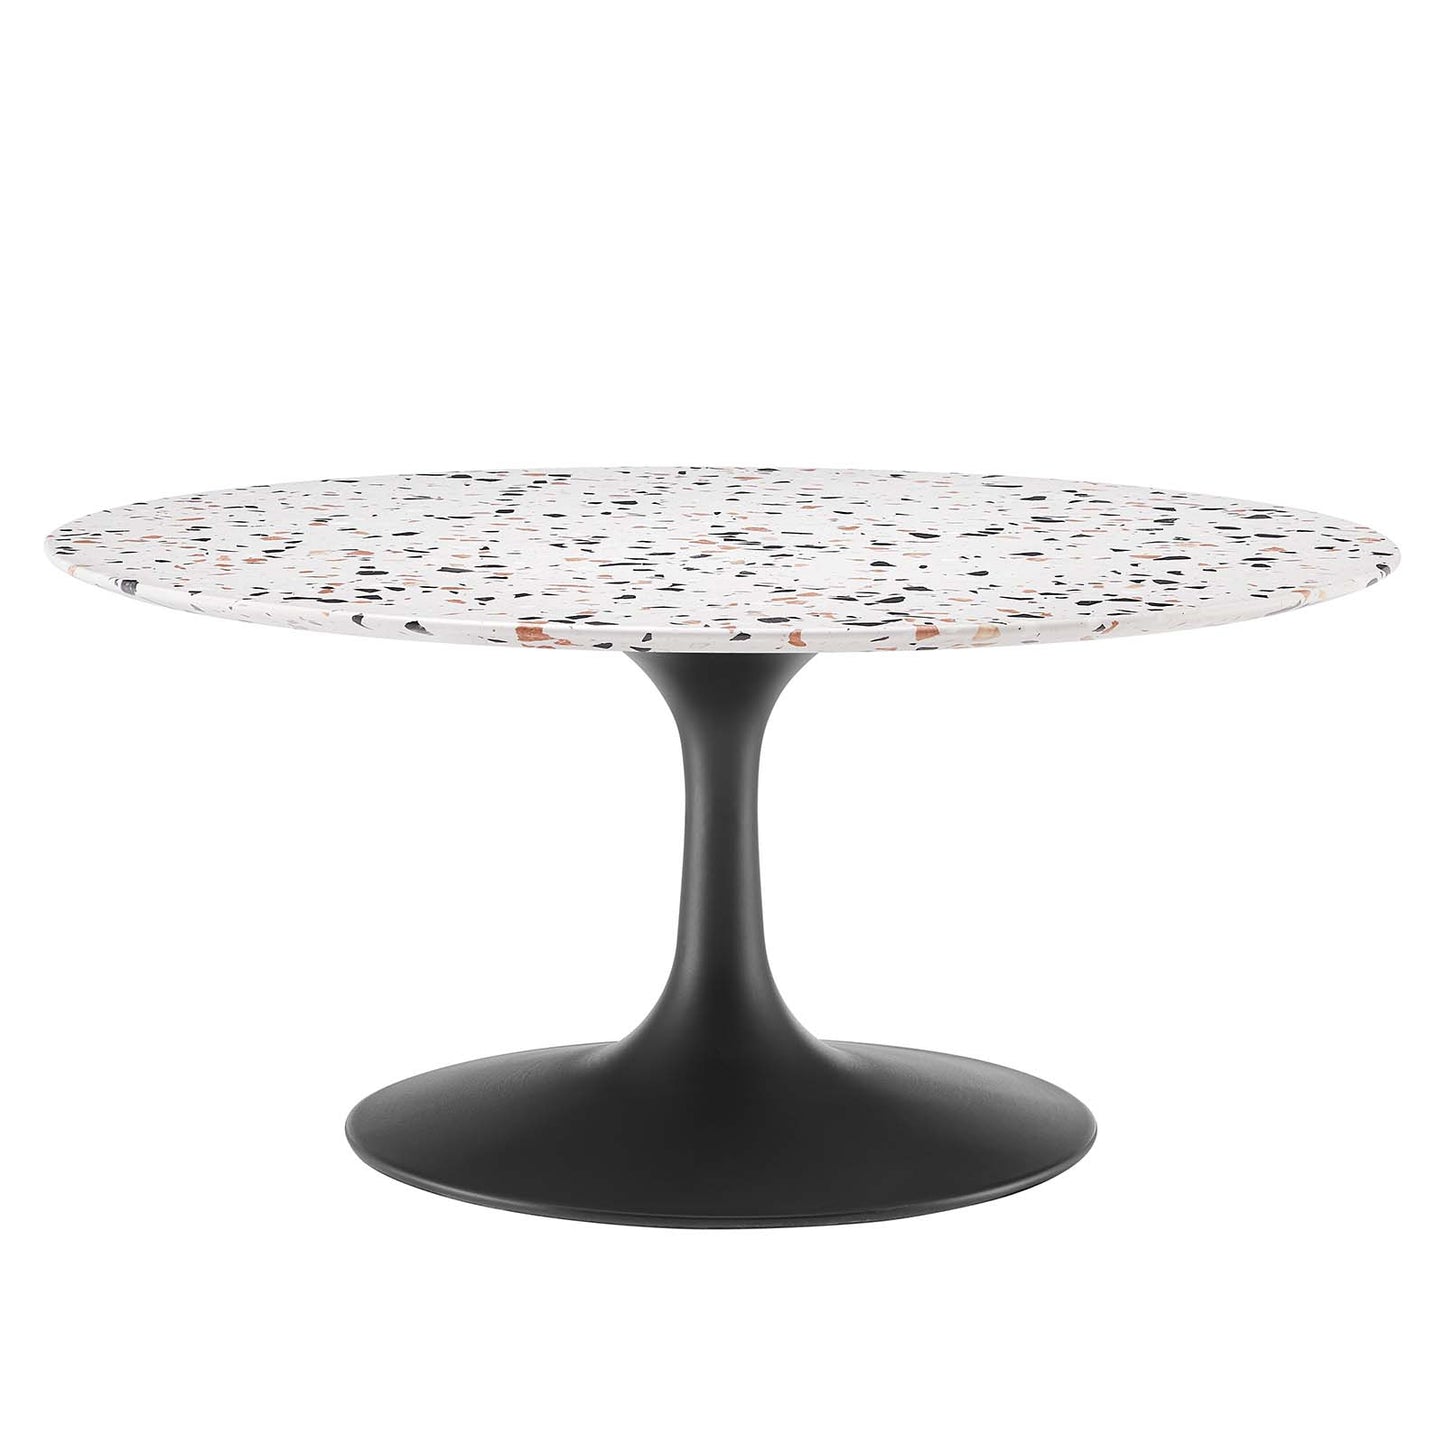 Lippa 36" Round Terrazzo Coffee Table Black White EEI-5721-BLK-WHI